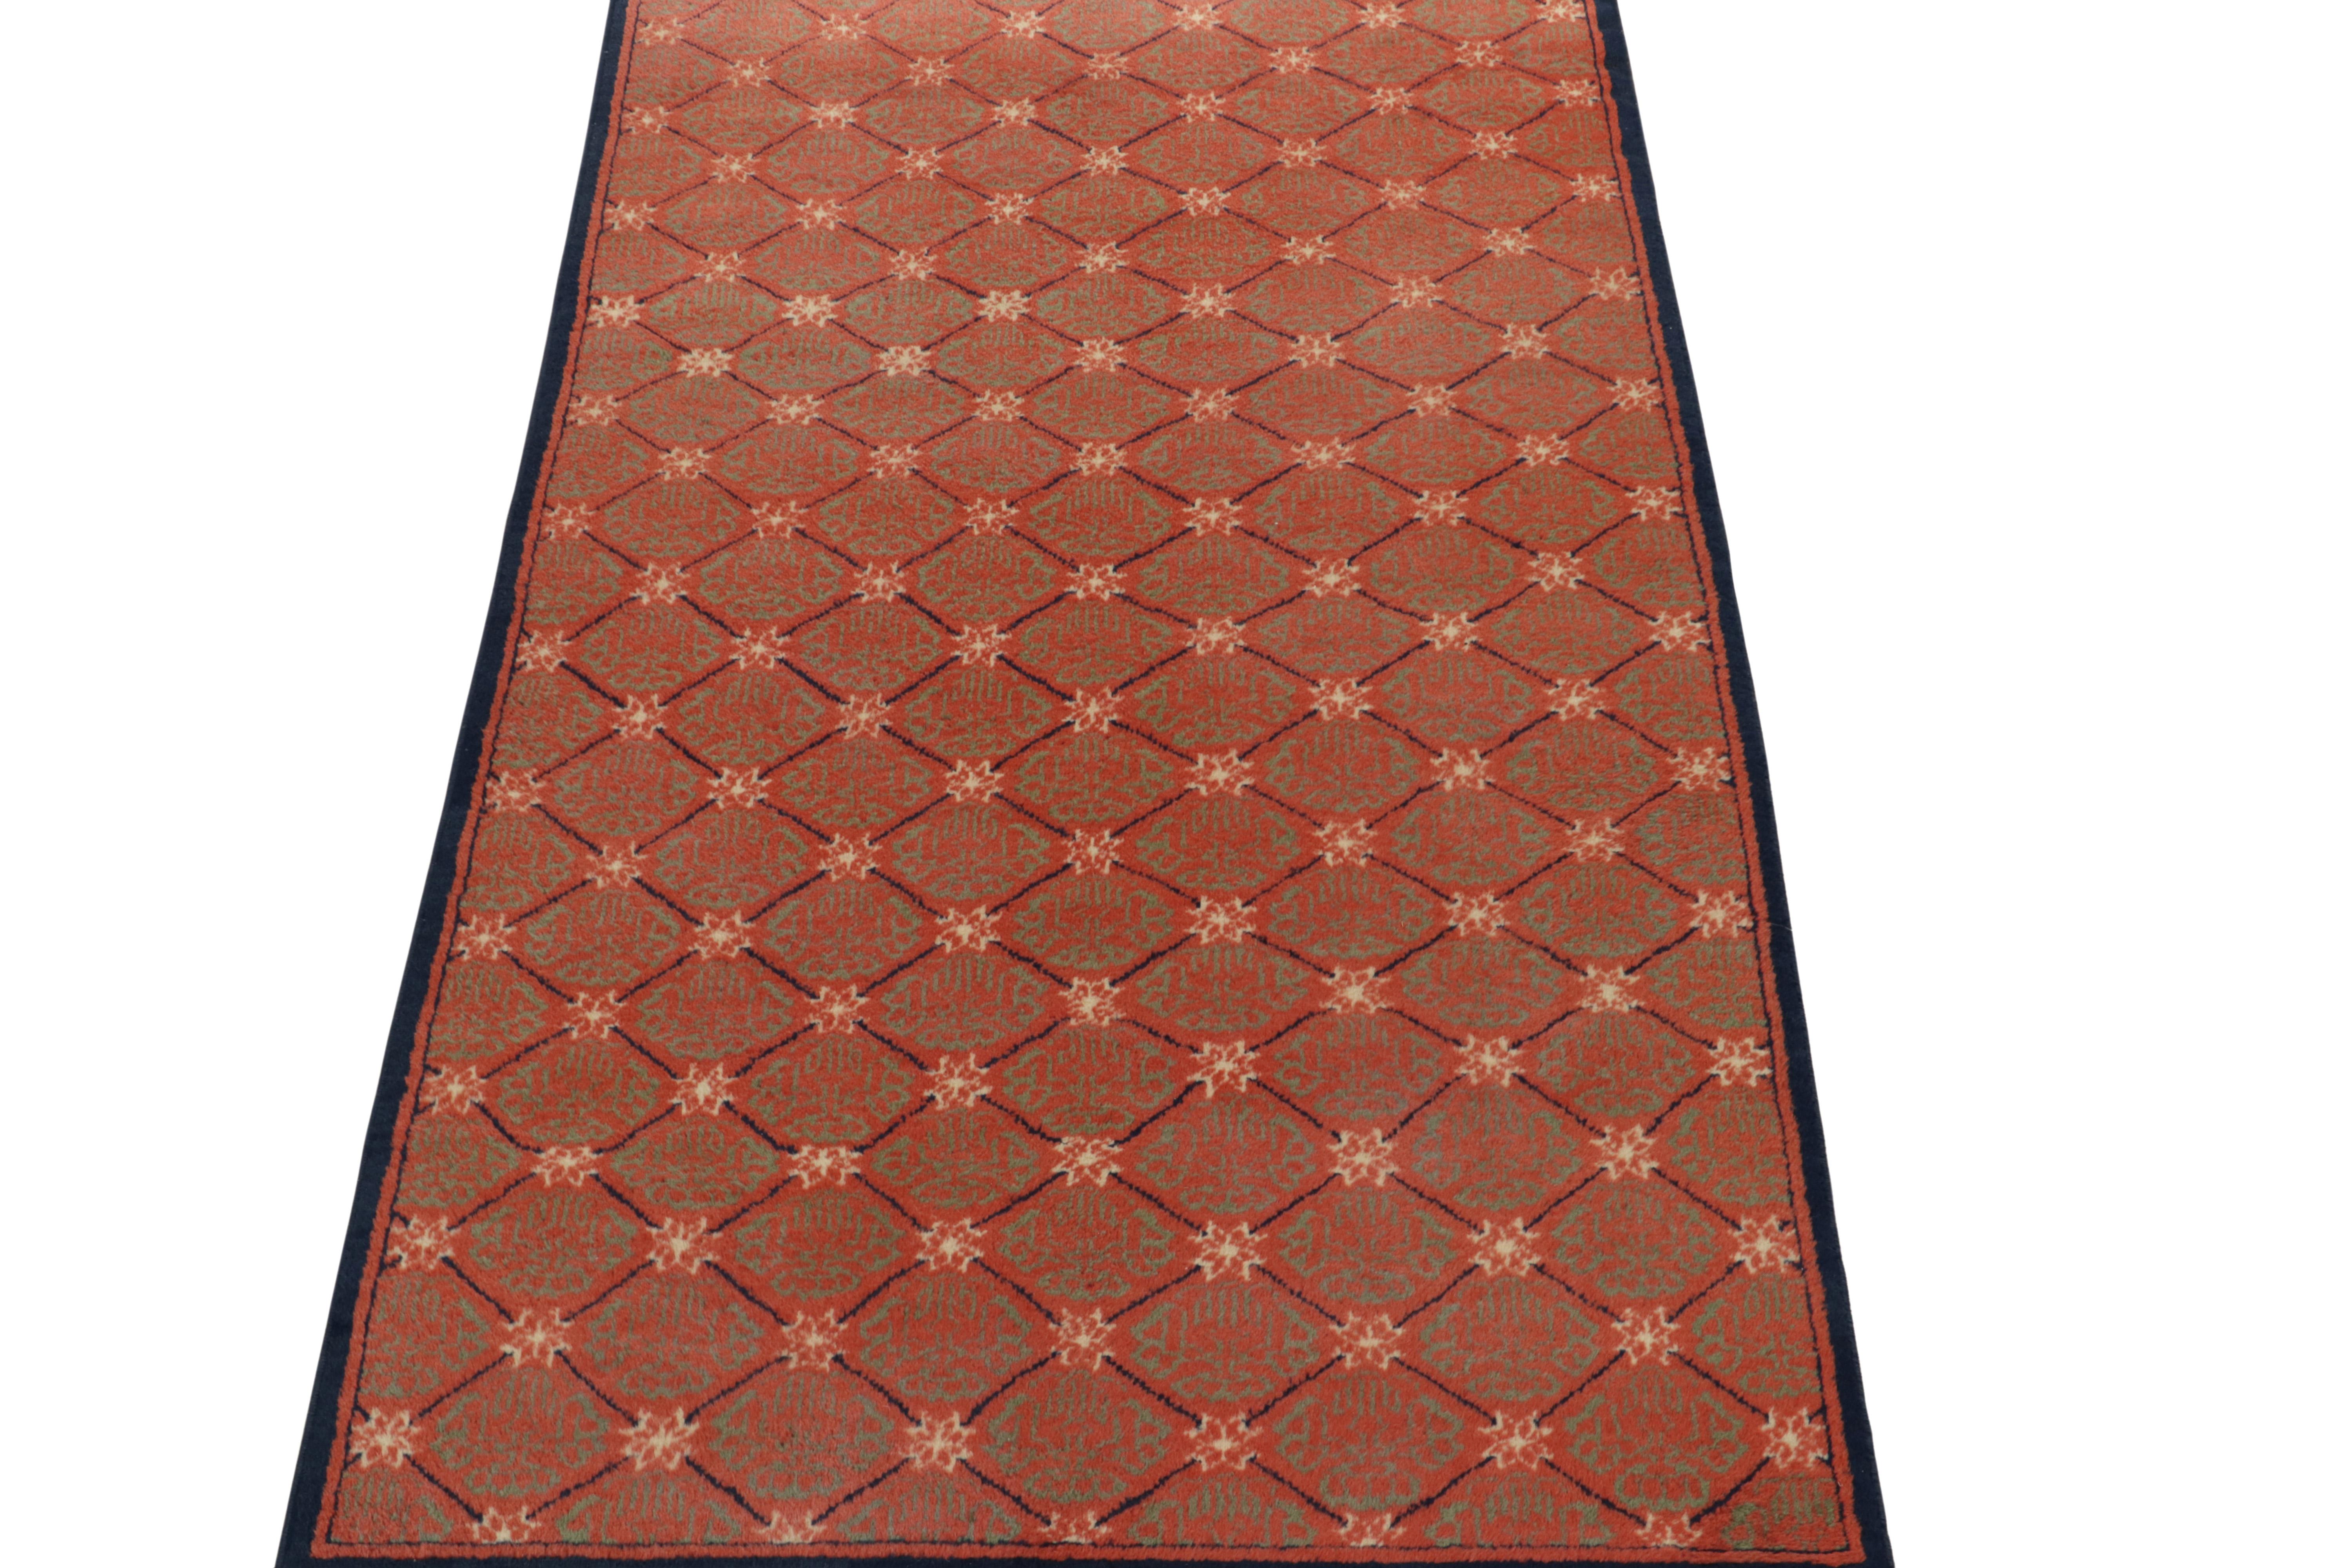 Ein 4x6 Vintage-Teppich mit einzigartiger türkischer Art-Déco-Sensibilität, einer der jüngsten Neuzugänge in unserer Mid Century Pasha Collection. 

Dieses Stück eines renommierten türkischen Designers aus den 1960er Jahren ist eine dezente